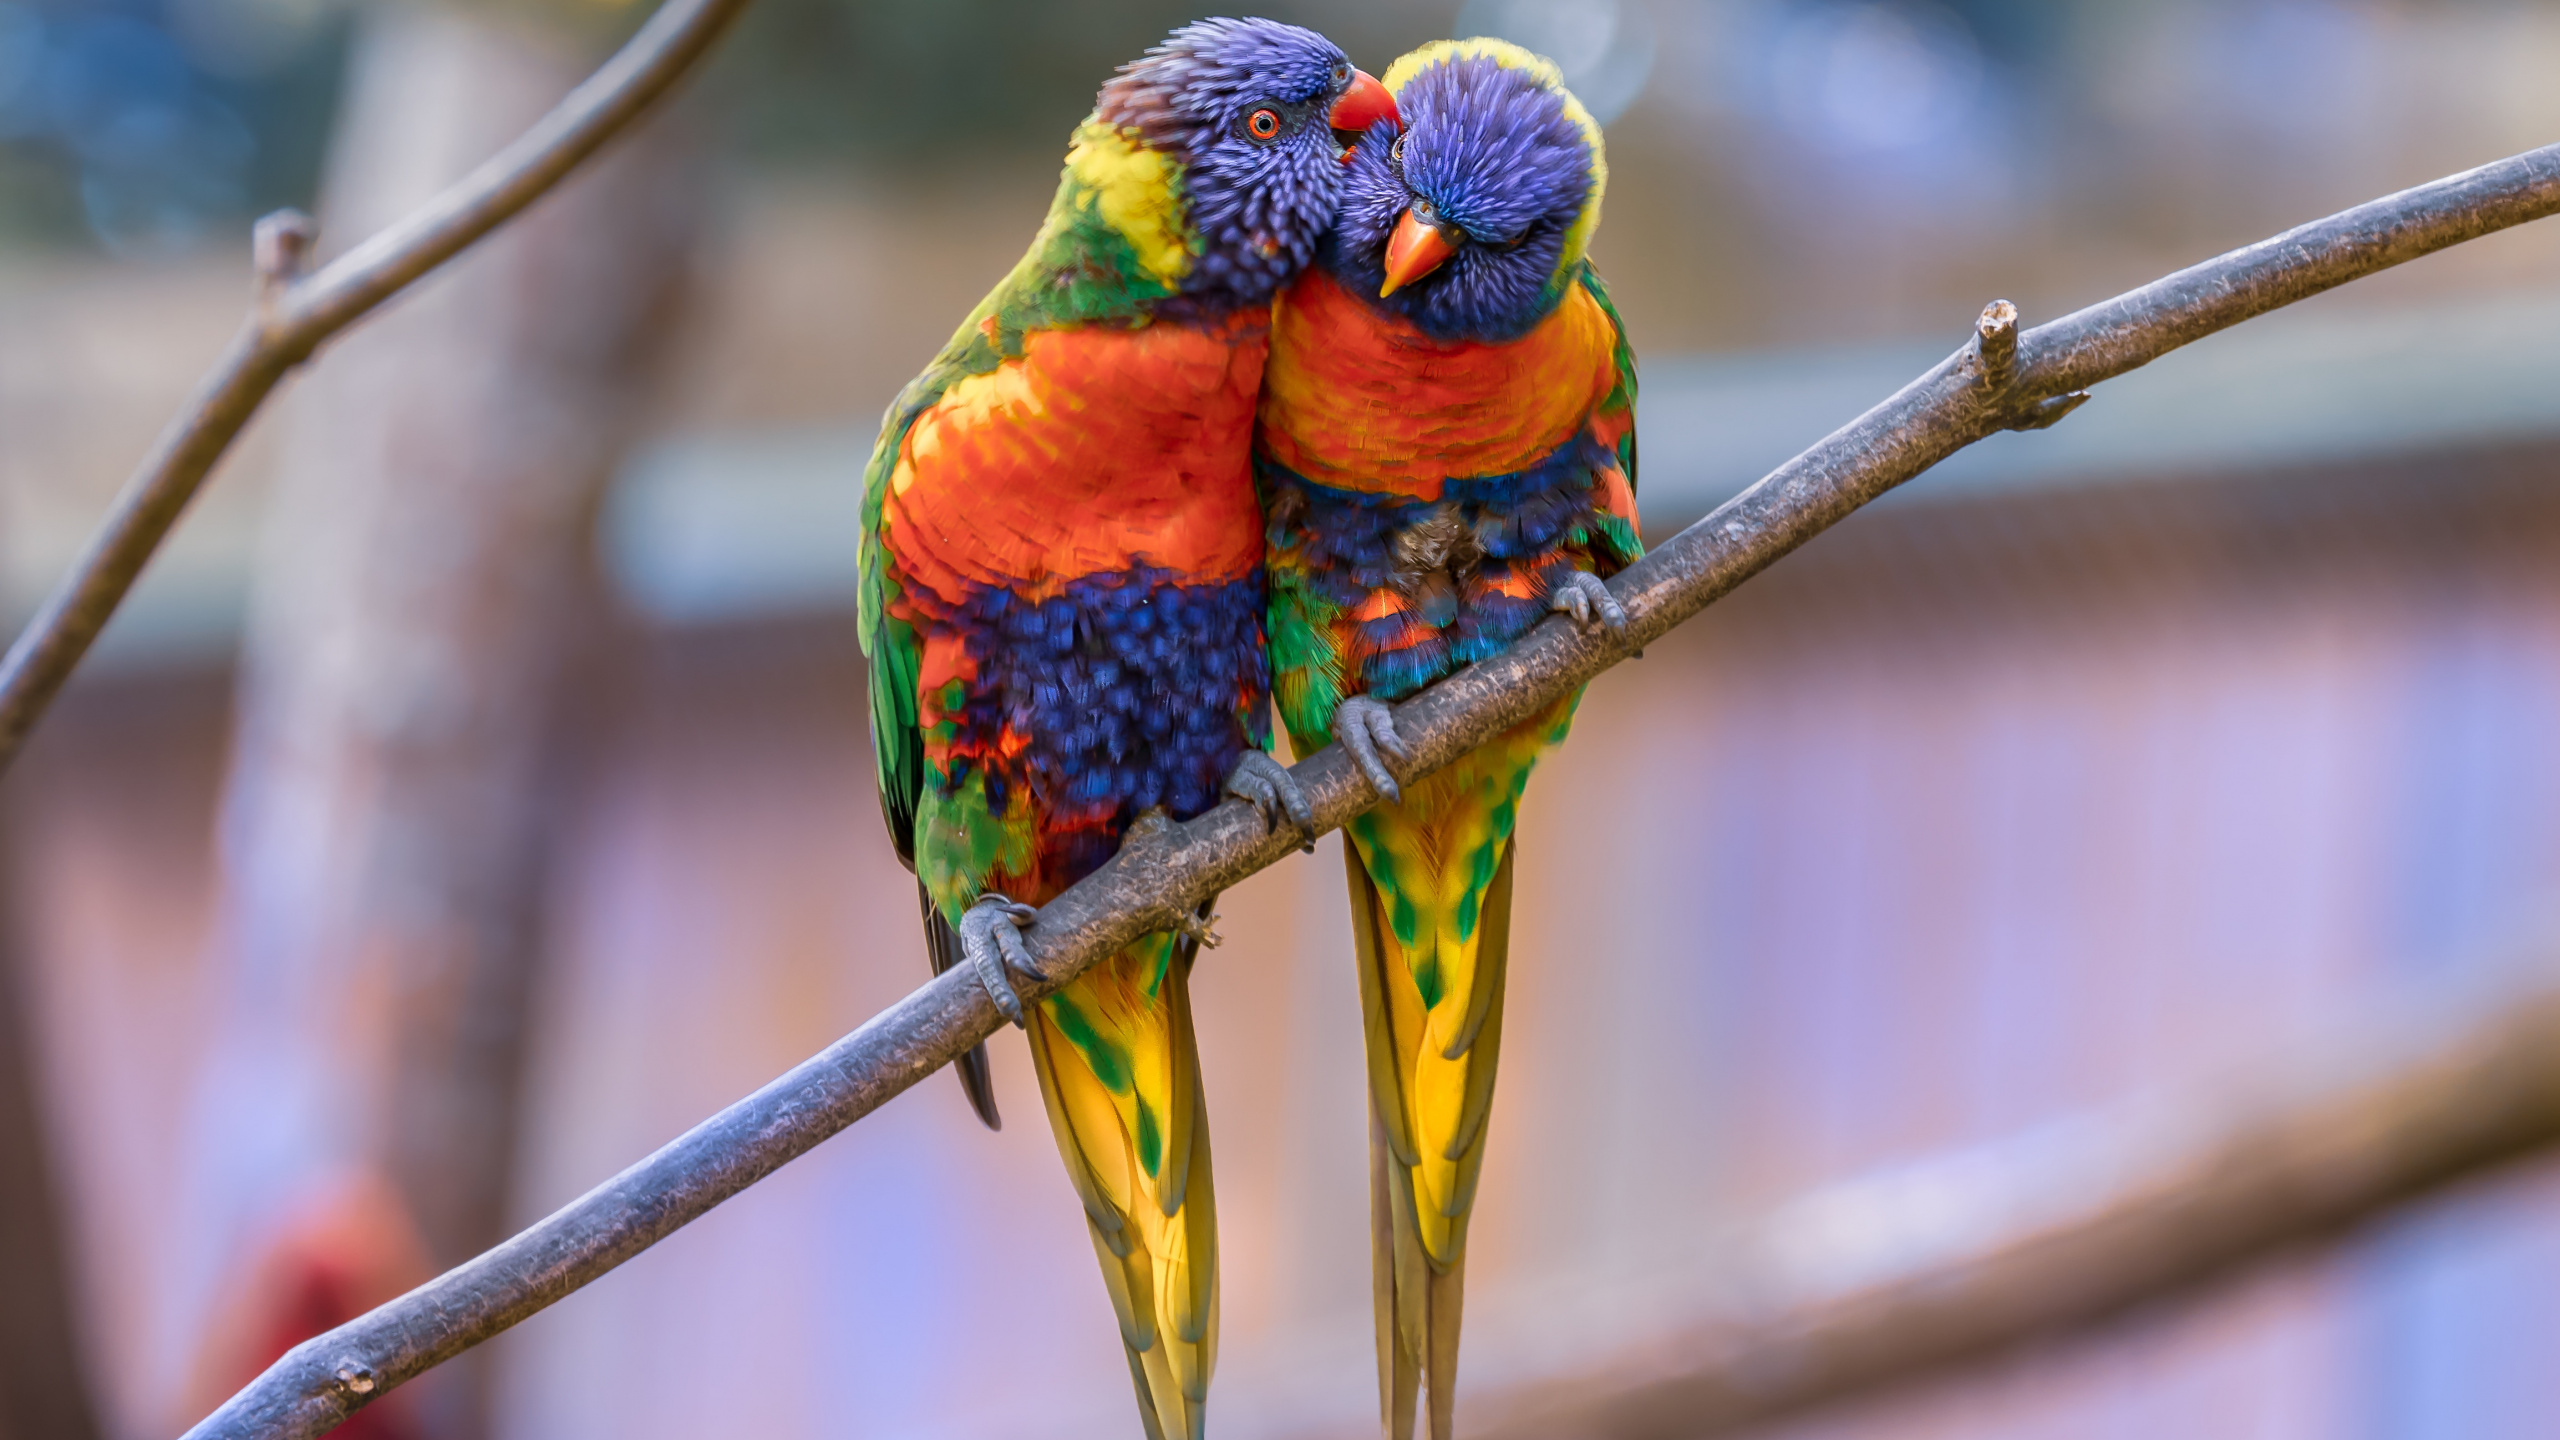 彩虹澳洲鹦鹉, 金刚鹦鹉, 鸟, 澳洲鹦鹉, 鹦鹉 壁纸 2560x1440 允许